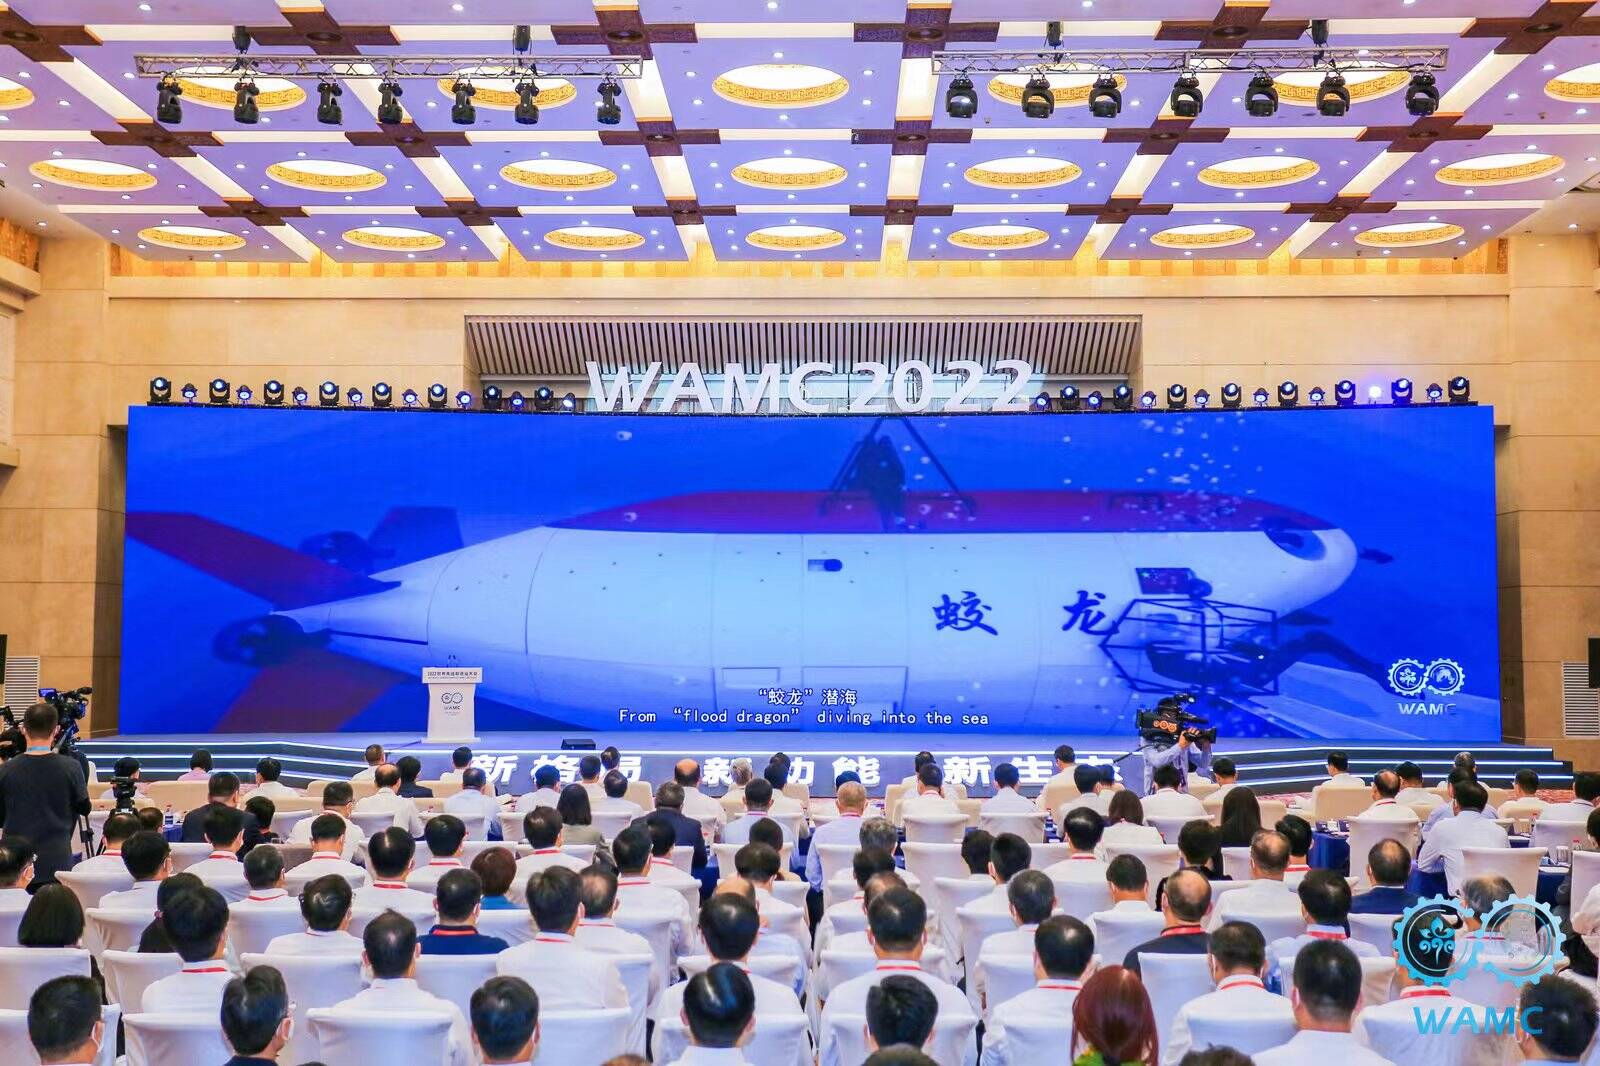 2022世界先进制造业大会开幕式暨主论坛举行